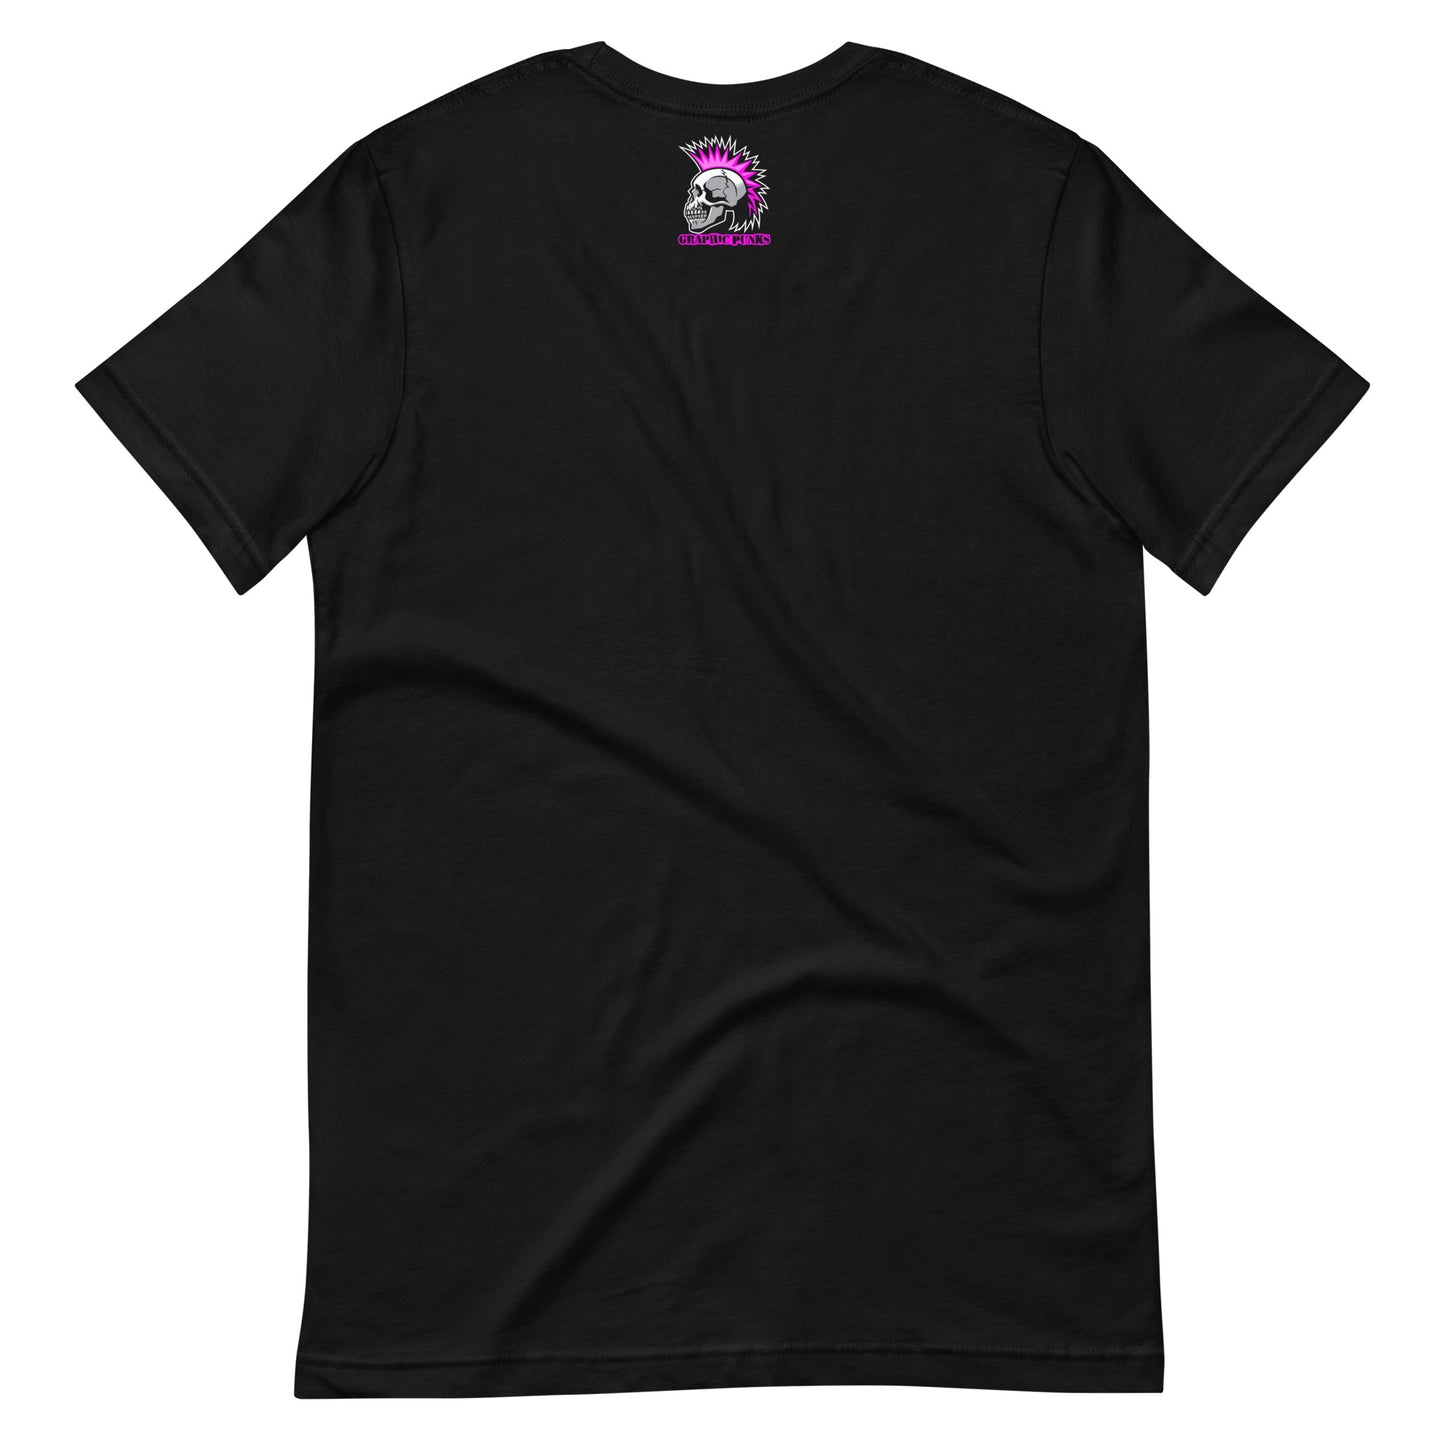 Jason Scissor Hands Unisex t-shirt